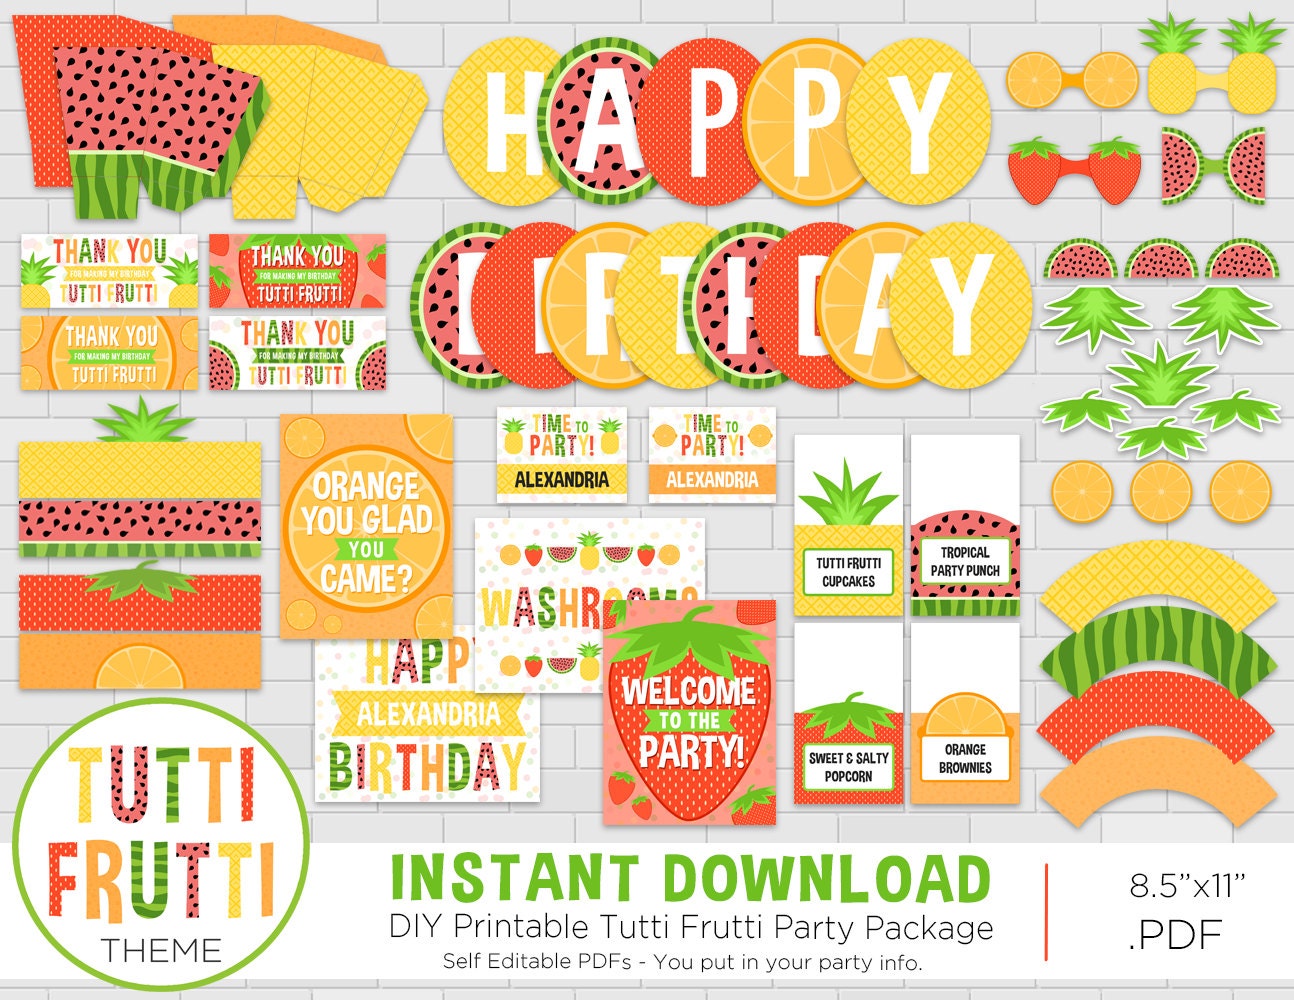 Fascinar Industrial nosotros Paquete de fiesta de cumpleaños Tutti Frutti Tema de frutas - Etsy España